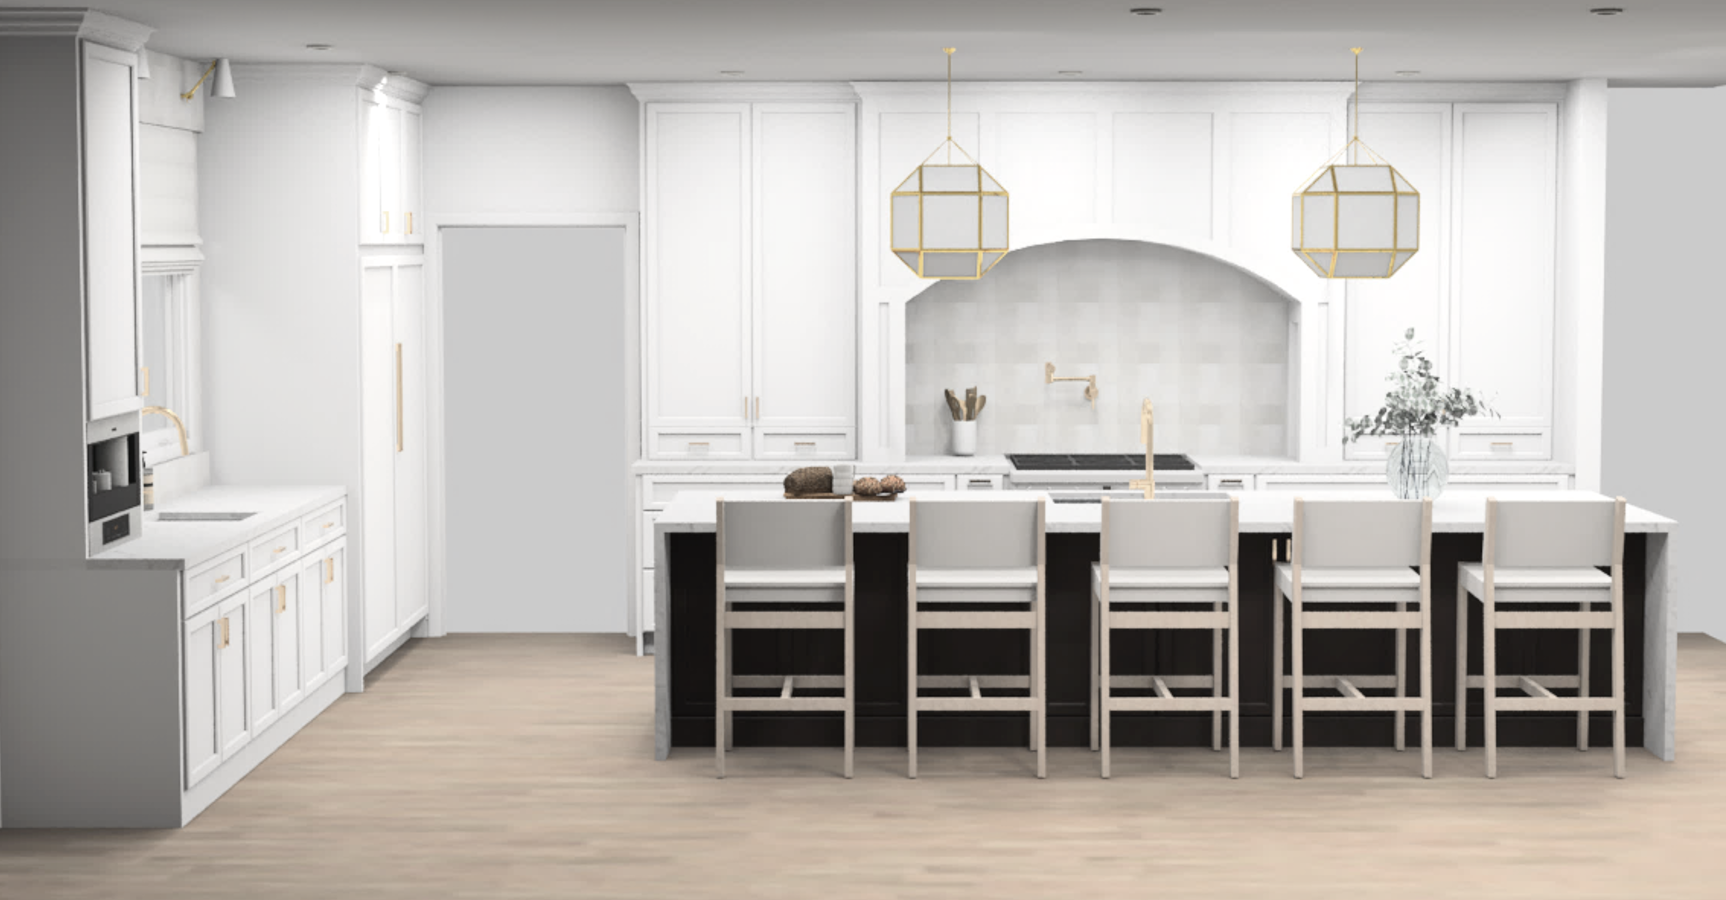 kitchen interior design rendering of white kitchen with dark island and gold fixtures